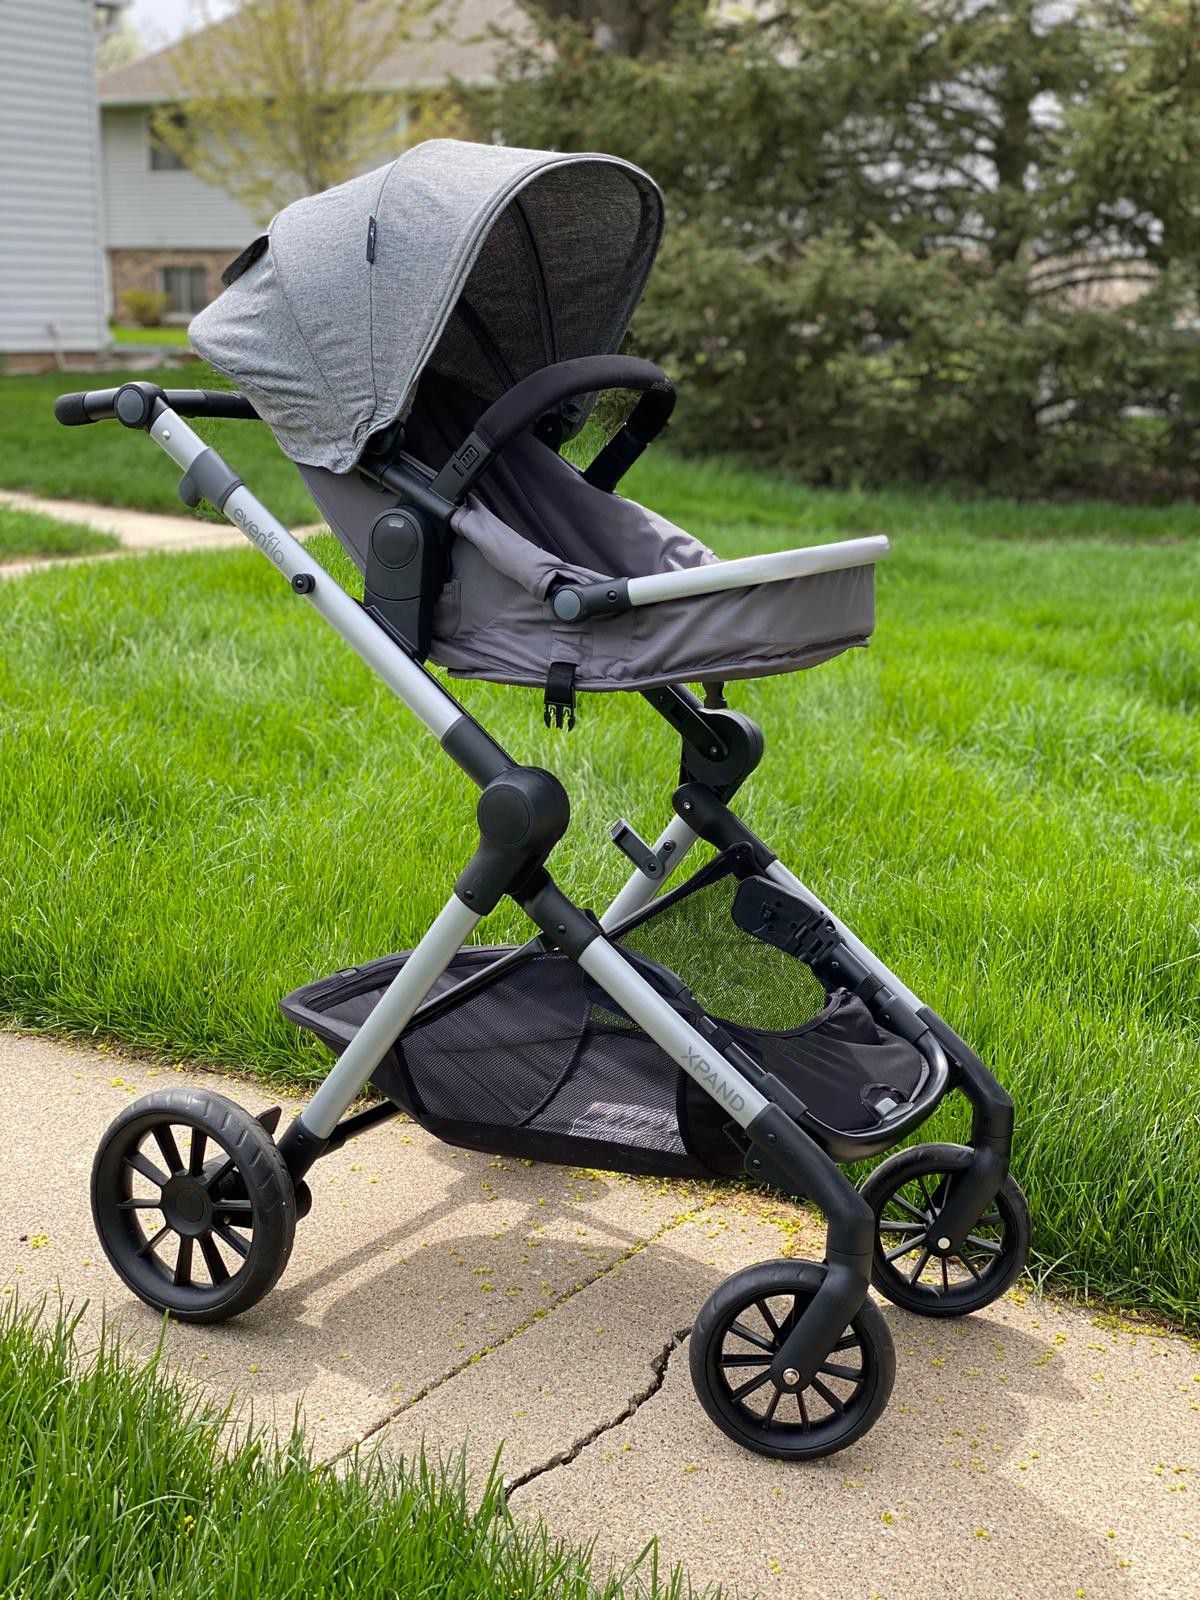 Evenflo Pivot Xpand, Single-to-Double Convertible Baby Stroller with Compact Folding design, Percheron Gray